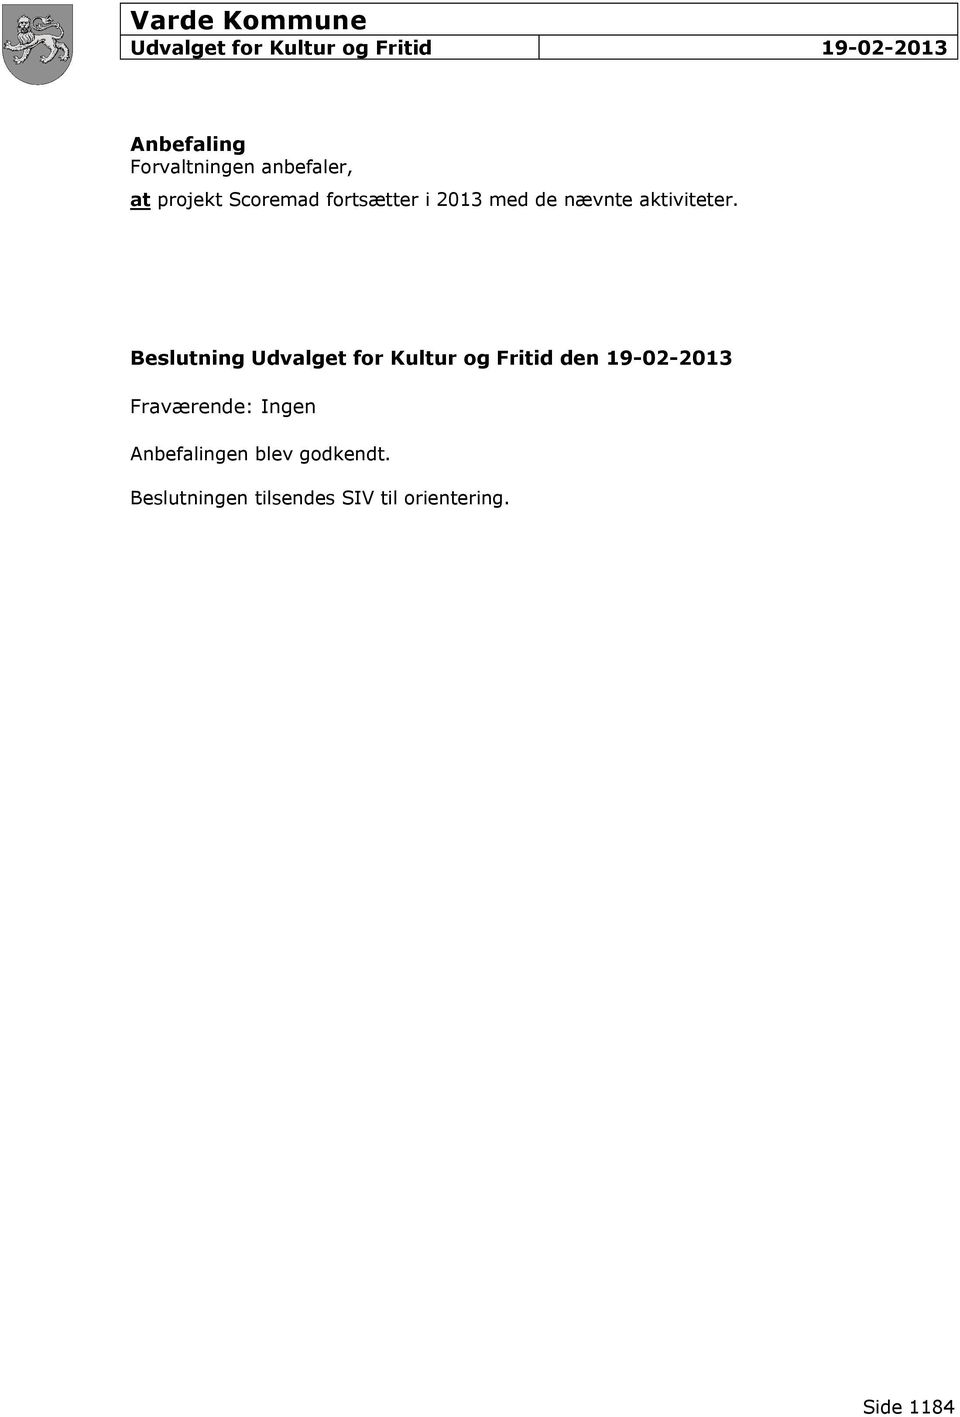 Beslutning den 19-02-2013 Fraværende: Ingen Anbefalingen